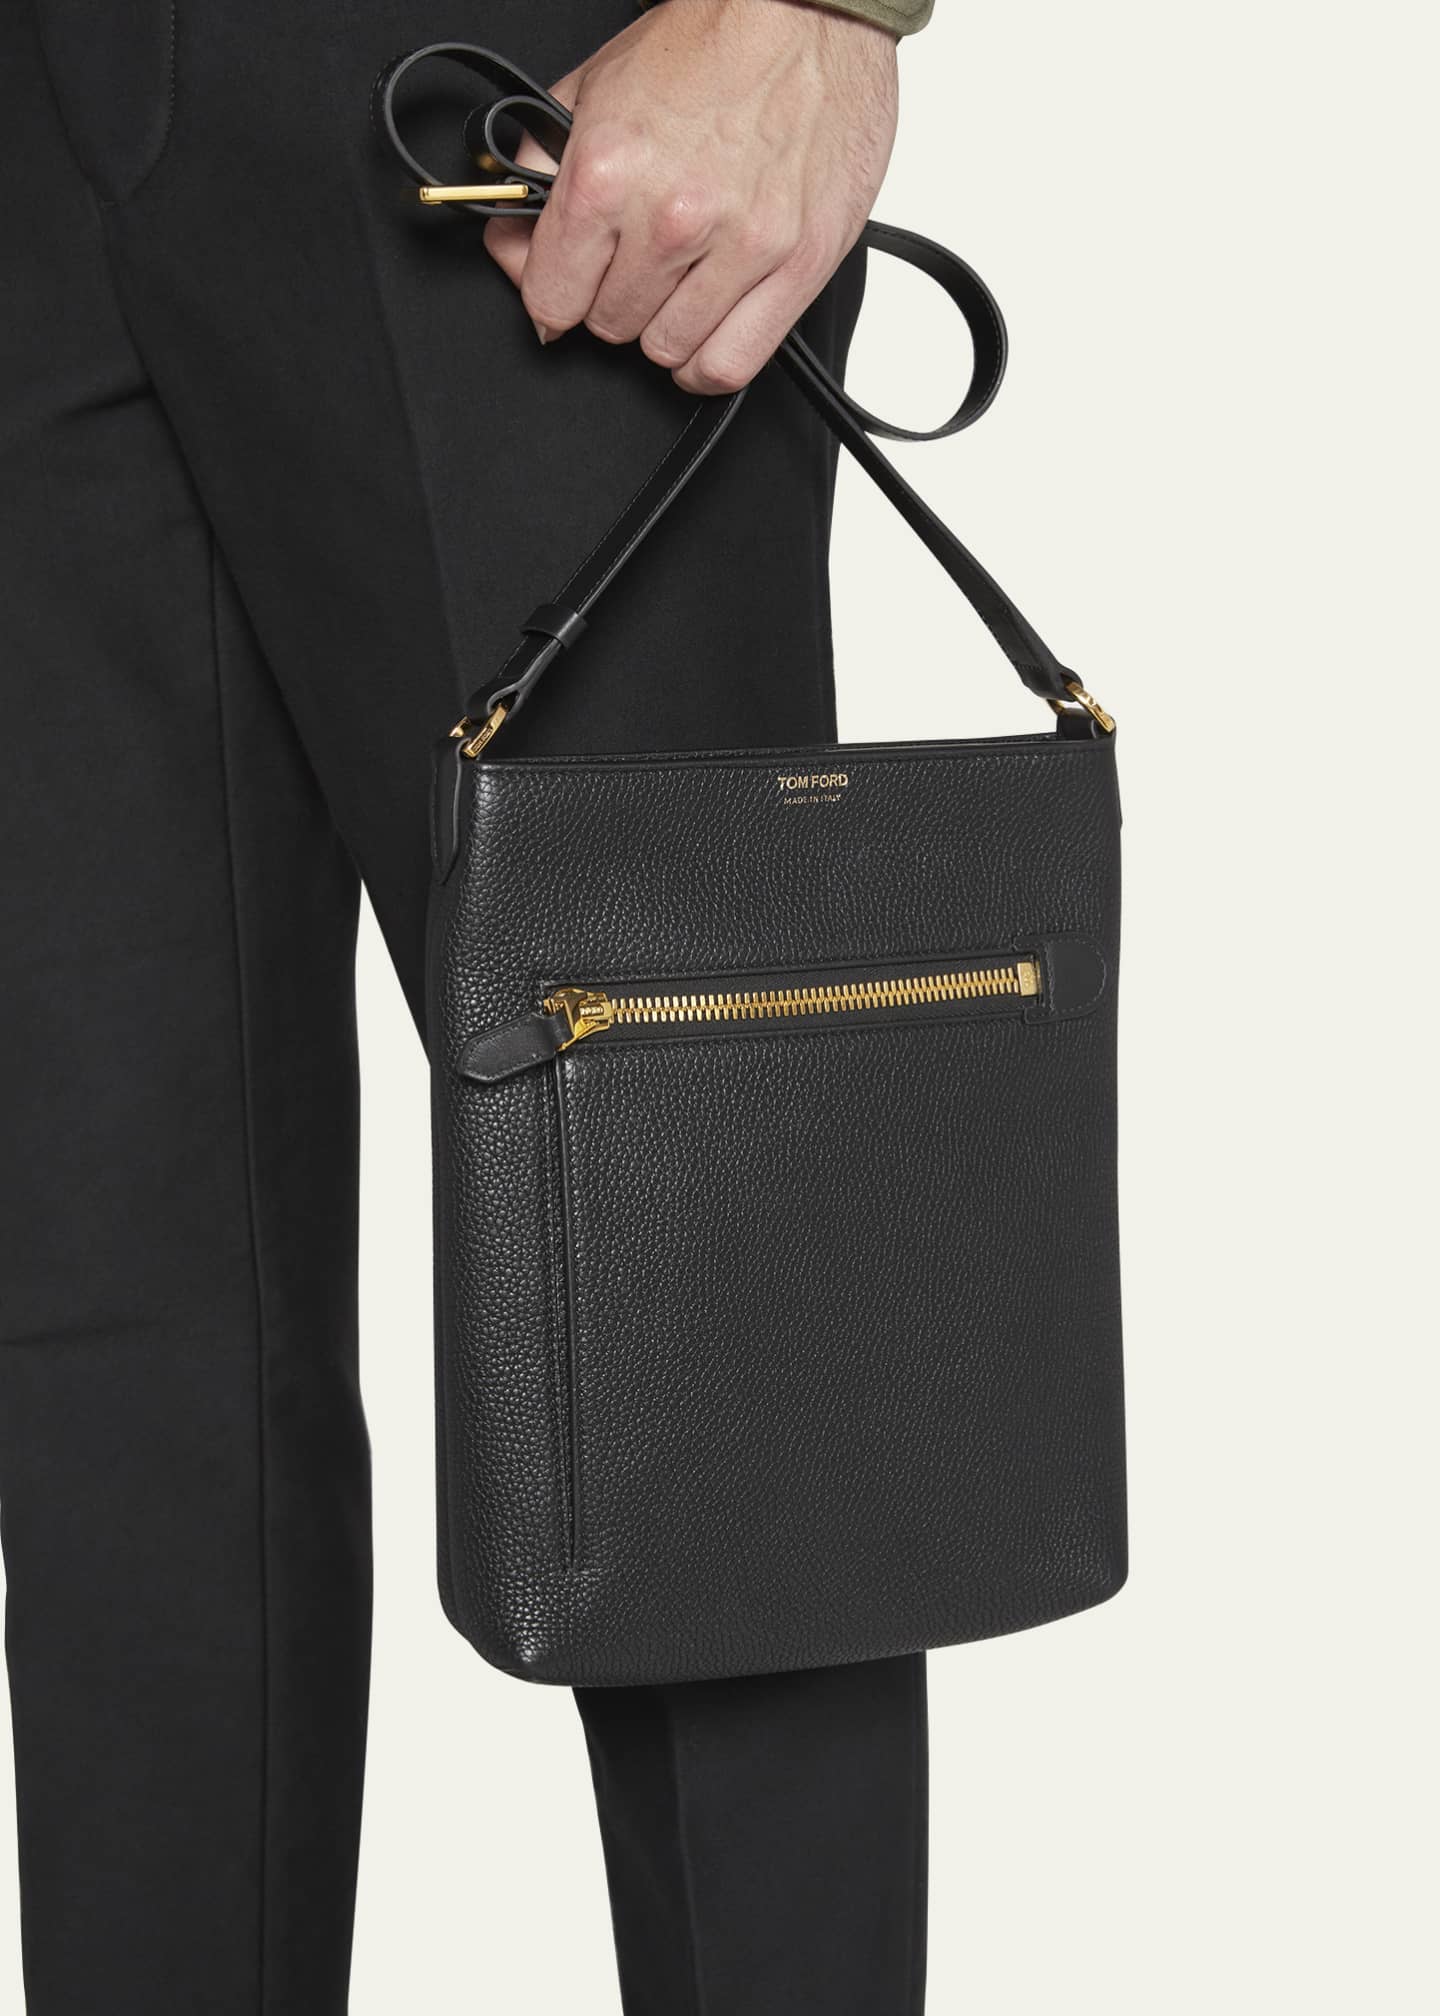 TOM FORD Men's Grain Leather Vertical Messenger Bag - Bergdorf Goodman